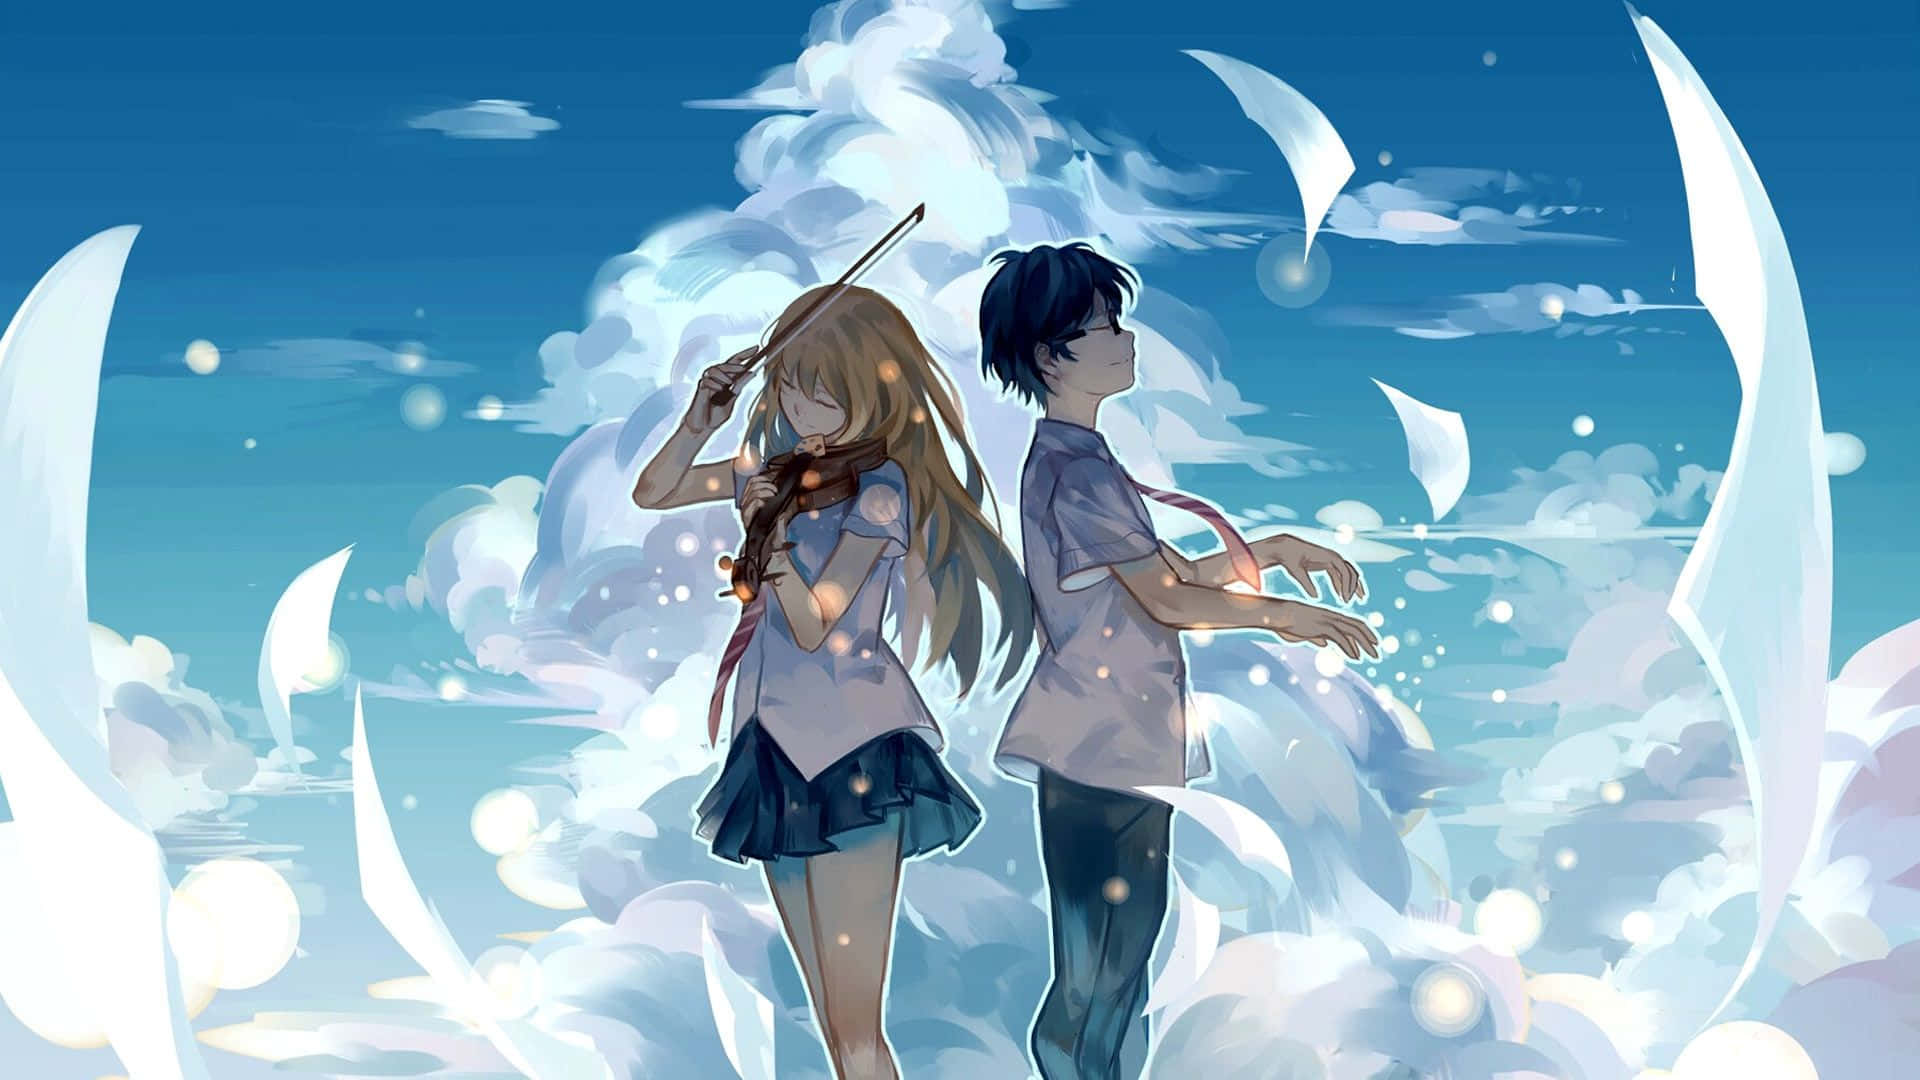 Anime Wallpapers For Pc  Anime wallpaper, Wallpaper pc, Desktop wallpaper  art